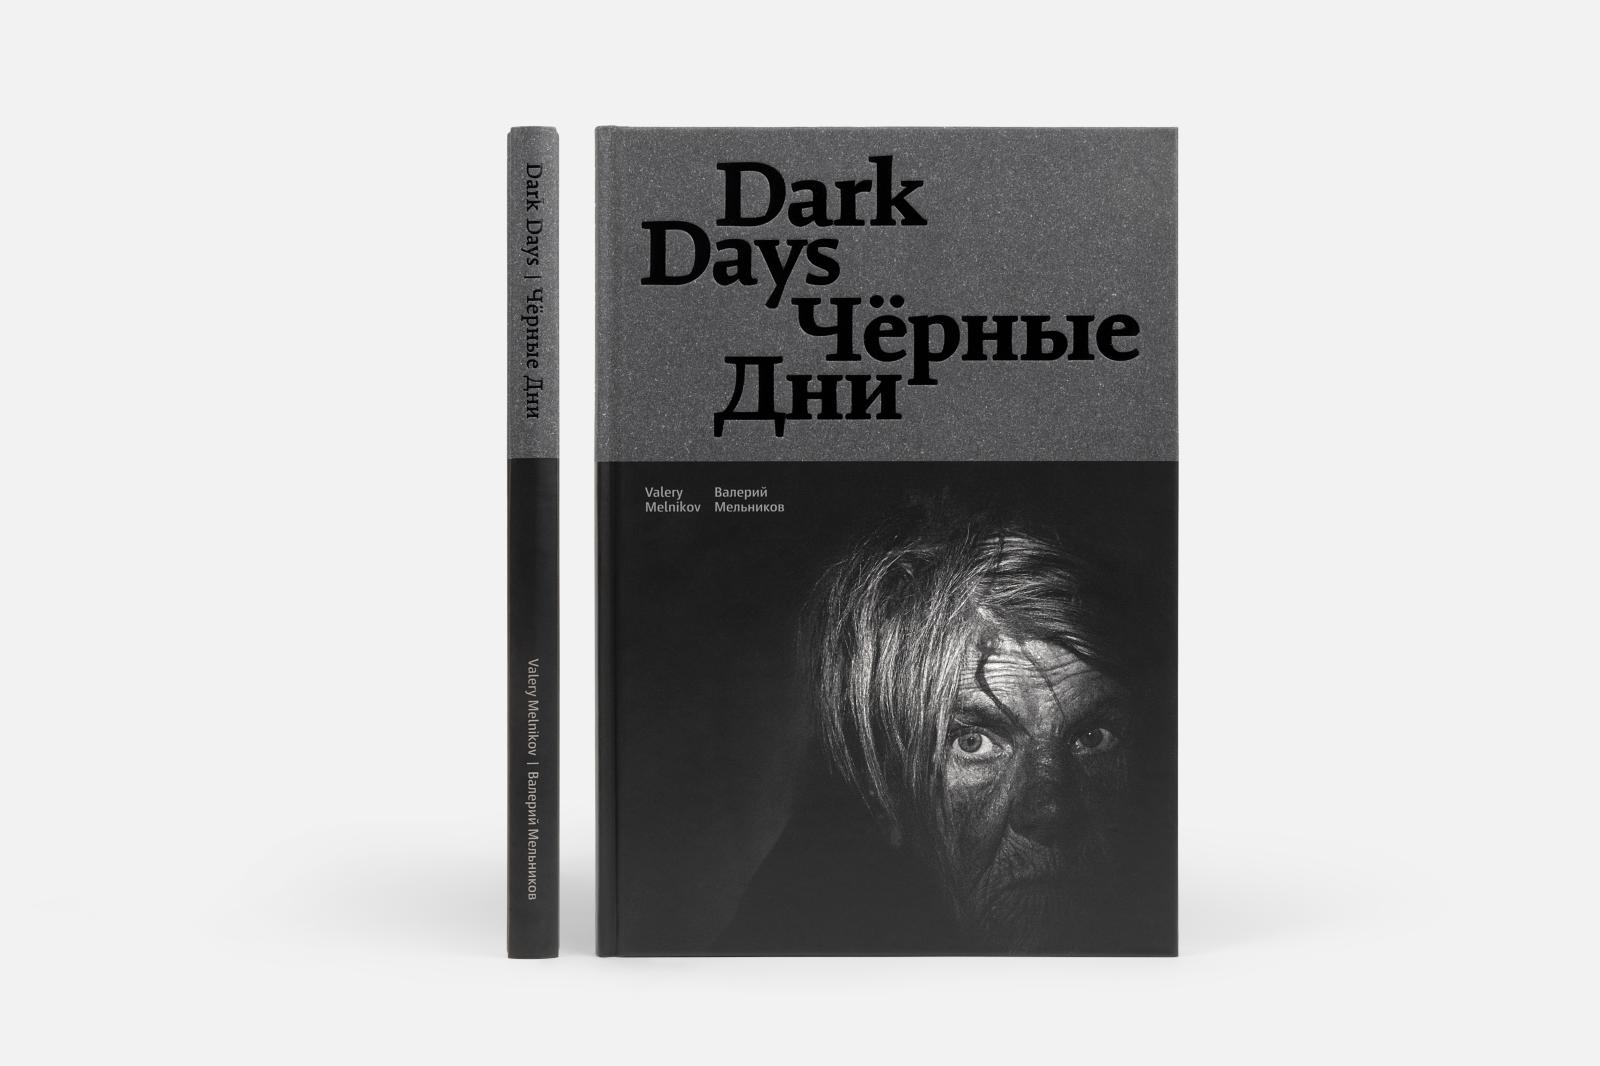 Dark Days book